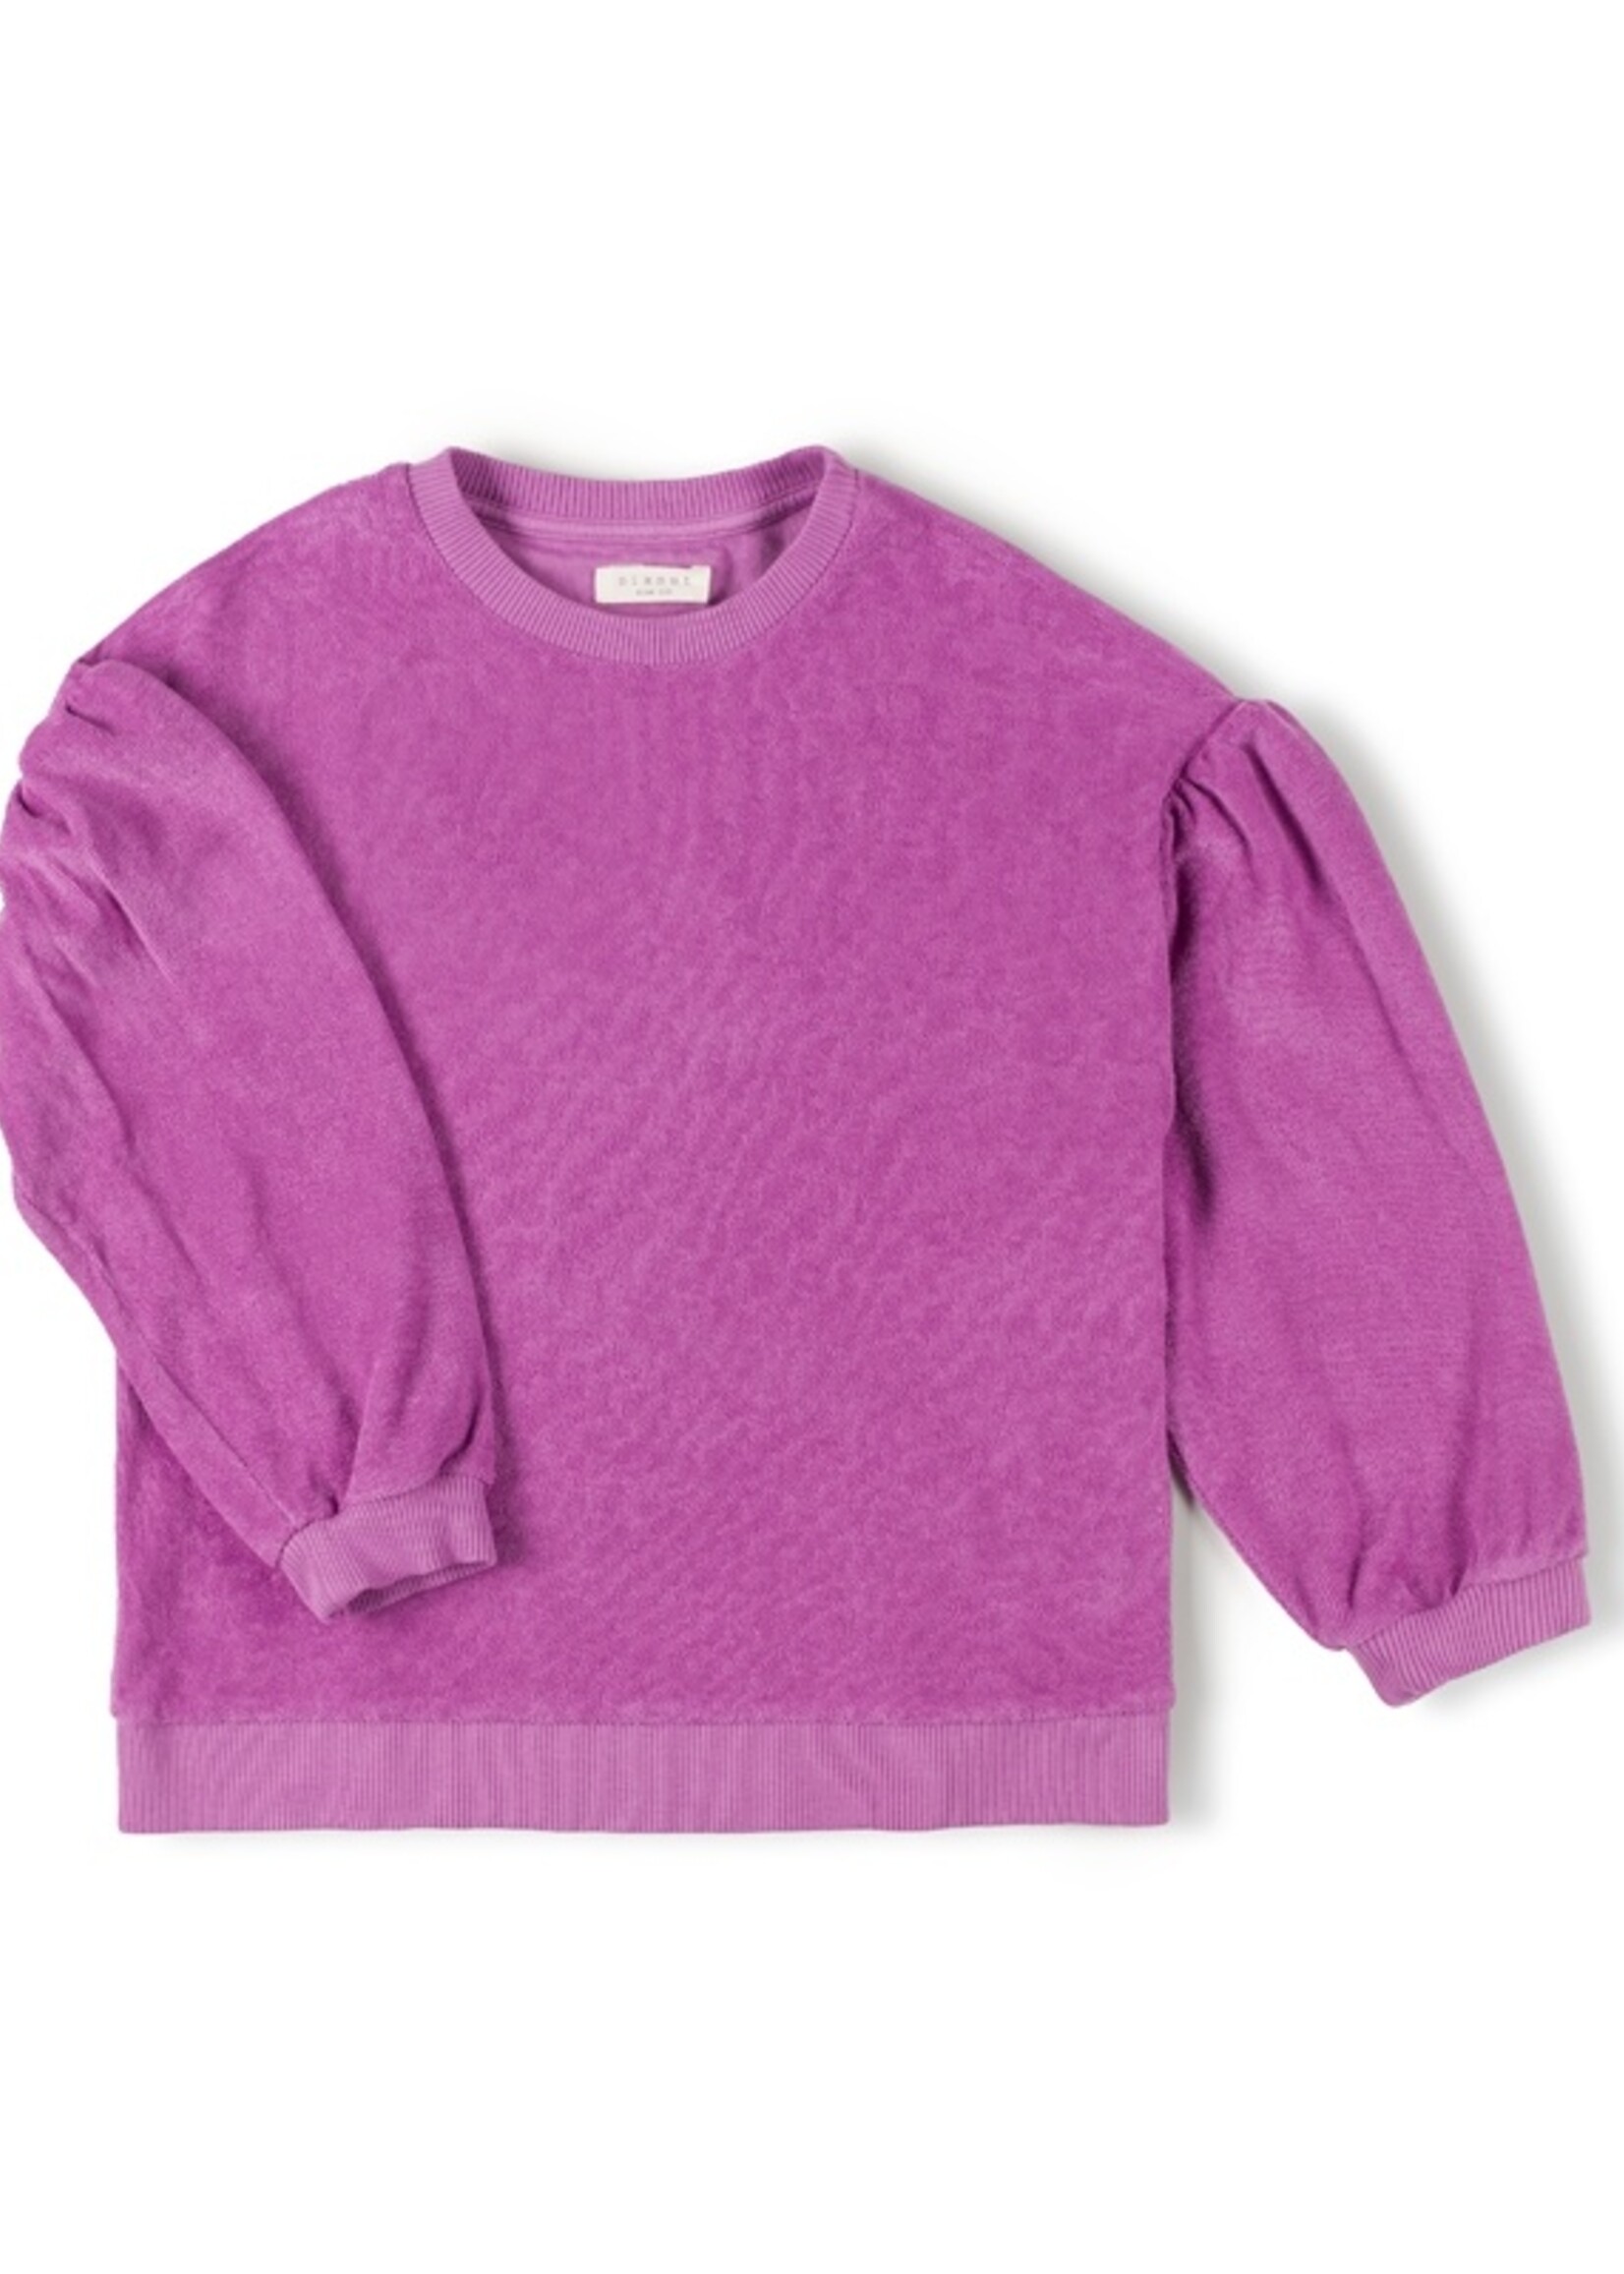 Nixnut Lux sweater lotus - Nixnut